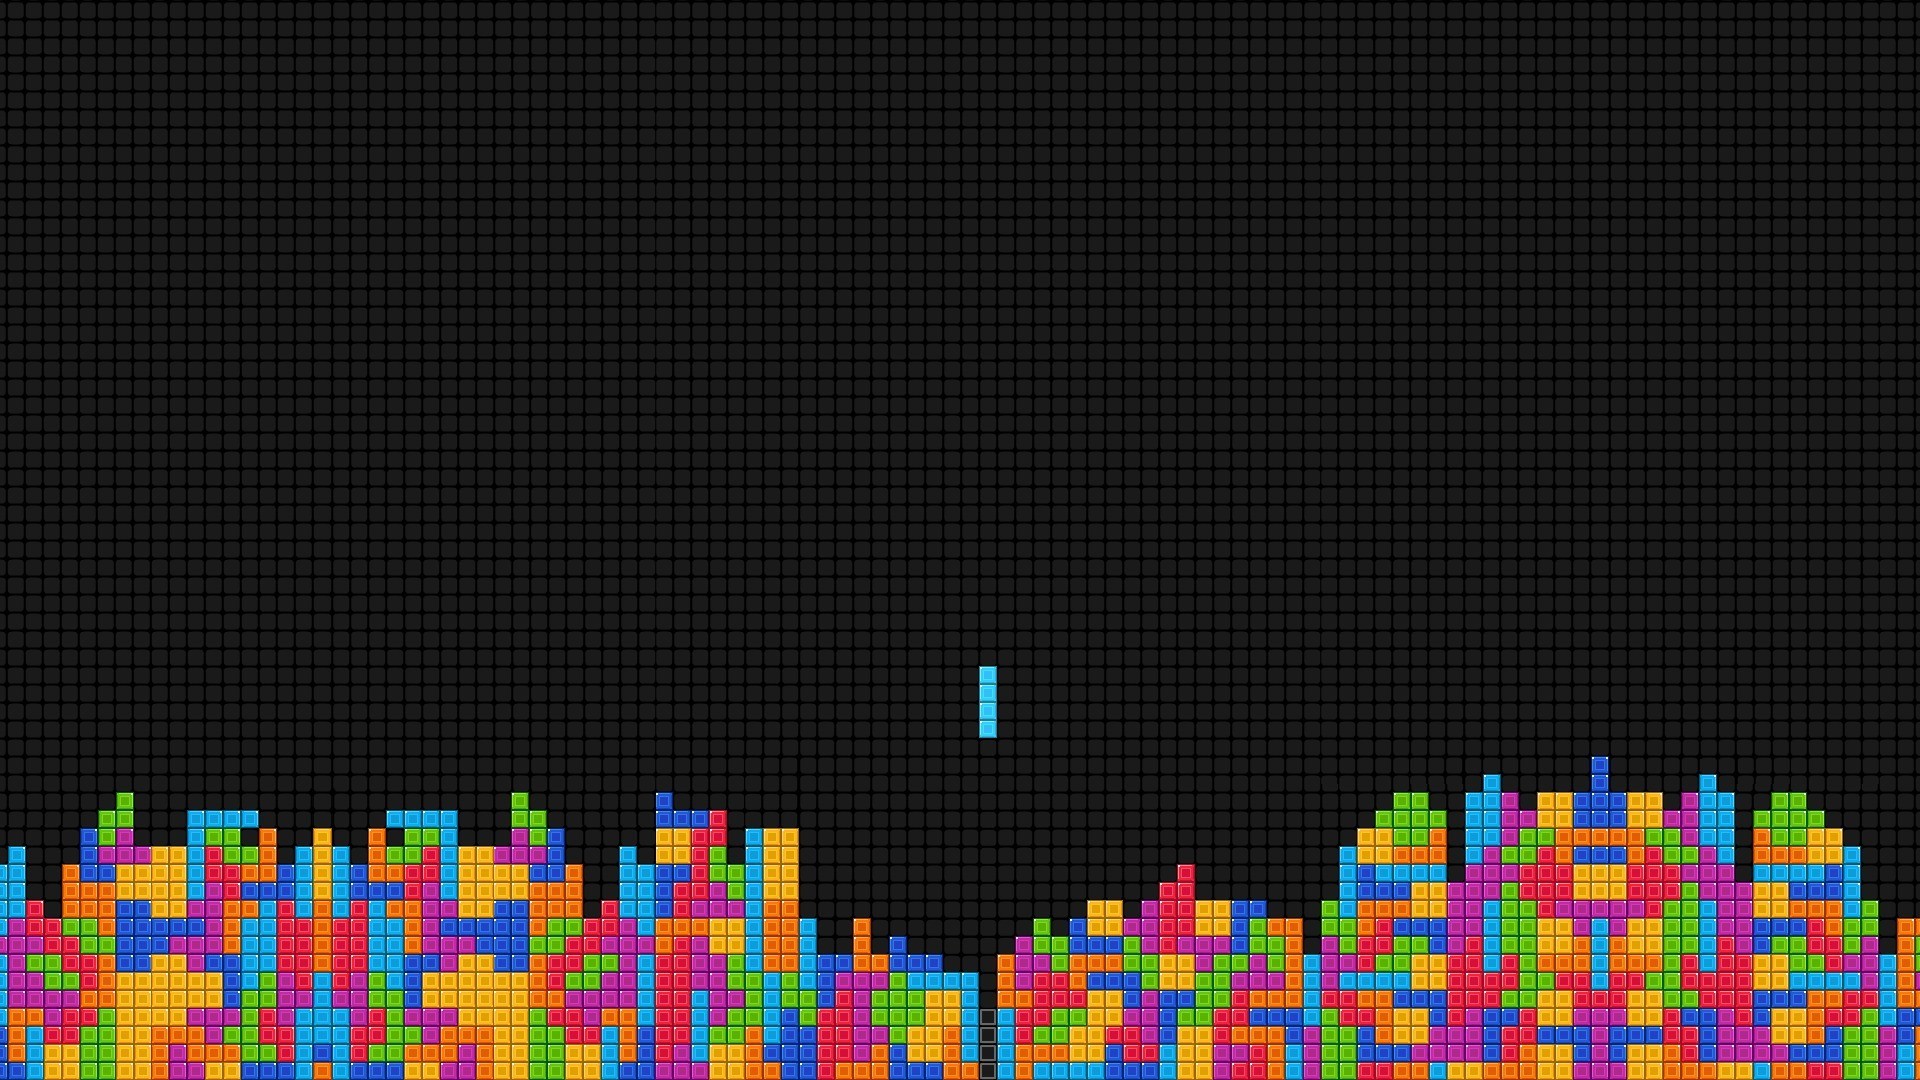 Melhores papéis de parede de Tetris para tela do telefone